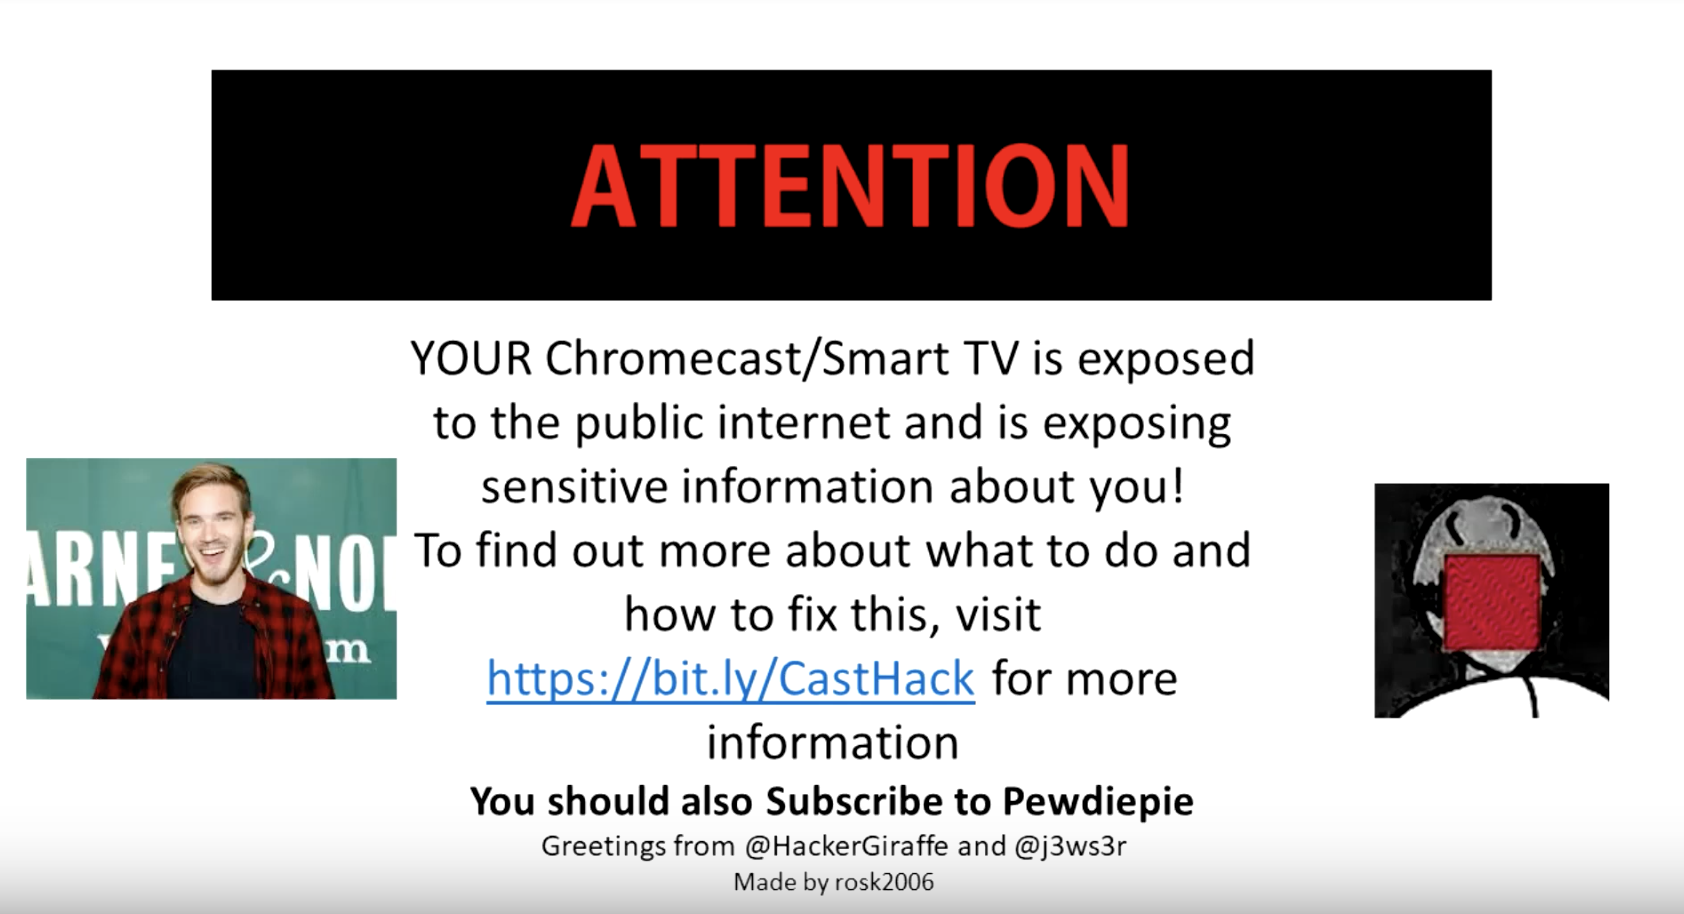 Tin tặc hack các thiết bị Chromecast để quảng bá kênh Youtube của PewDiePie